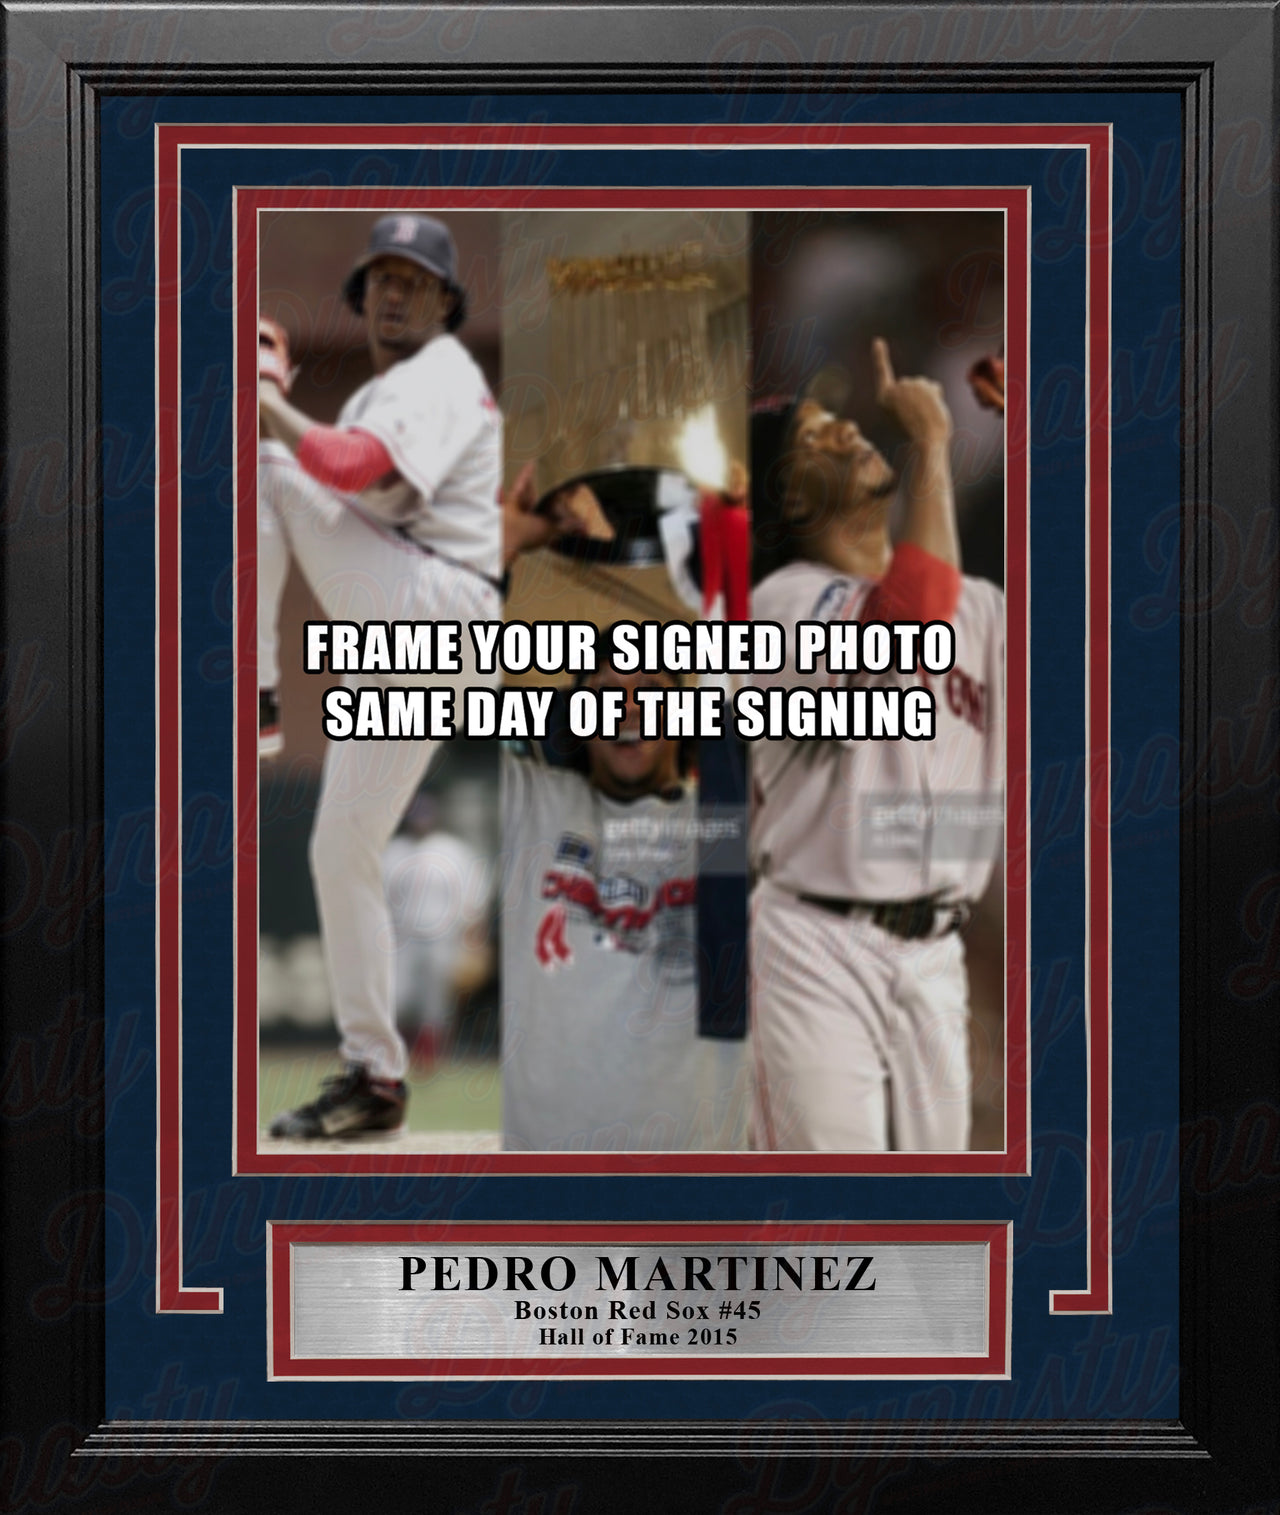 Pedro Martinez Boston Red Sox Photo Frame Kit - Dynasty Sports & Framing 